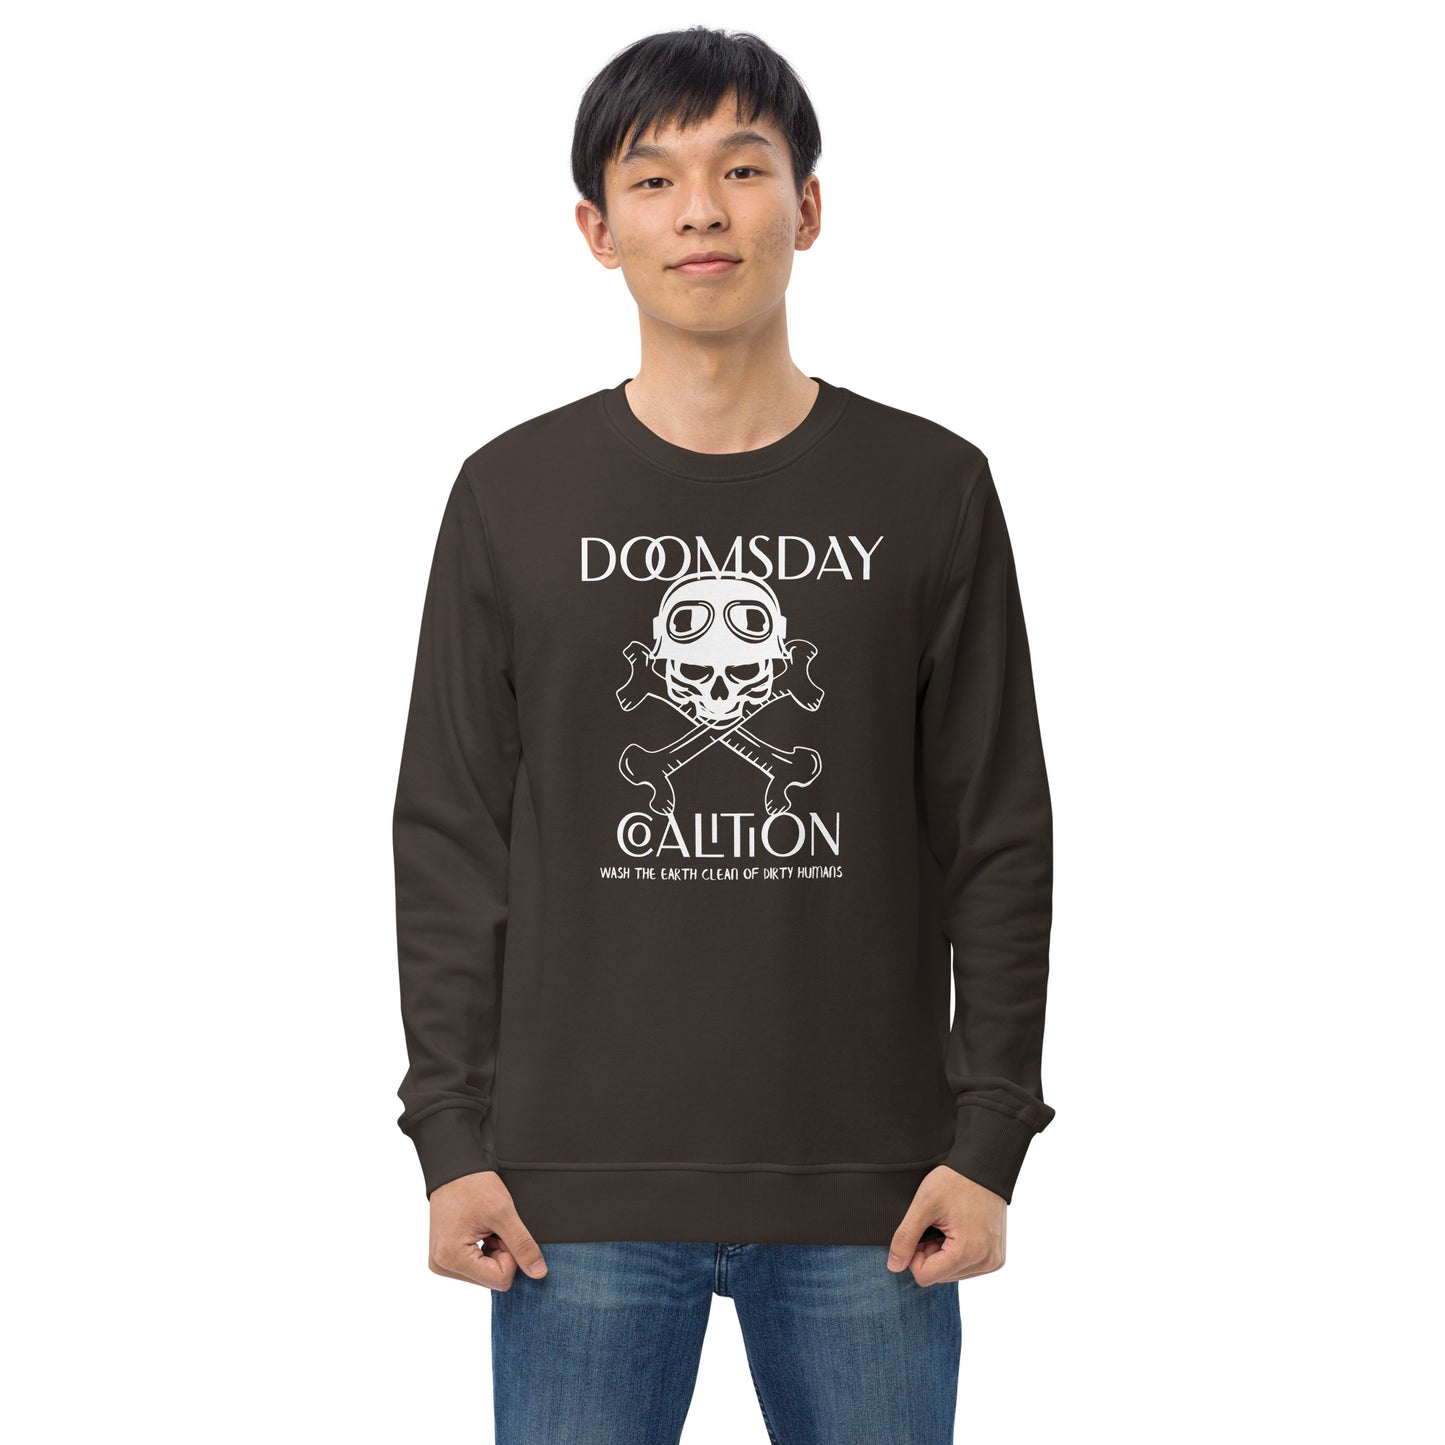 Doomsday Coalition Sweatshirt